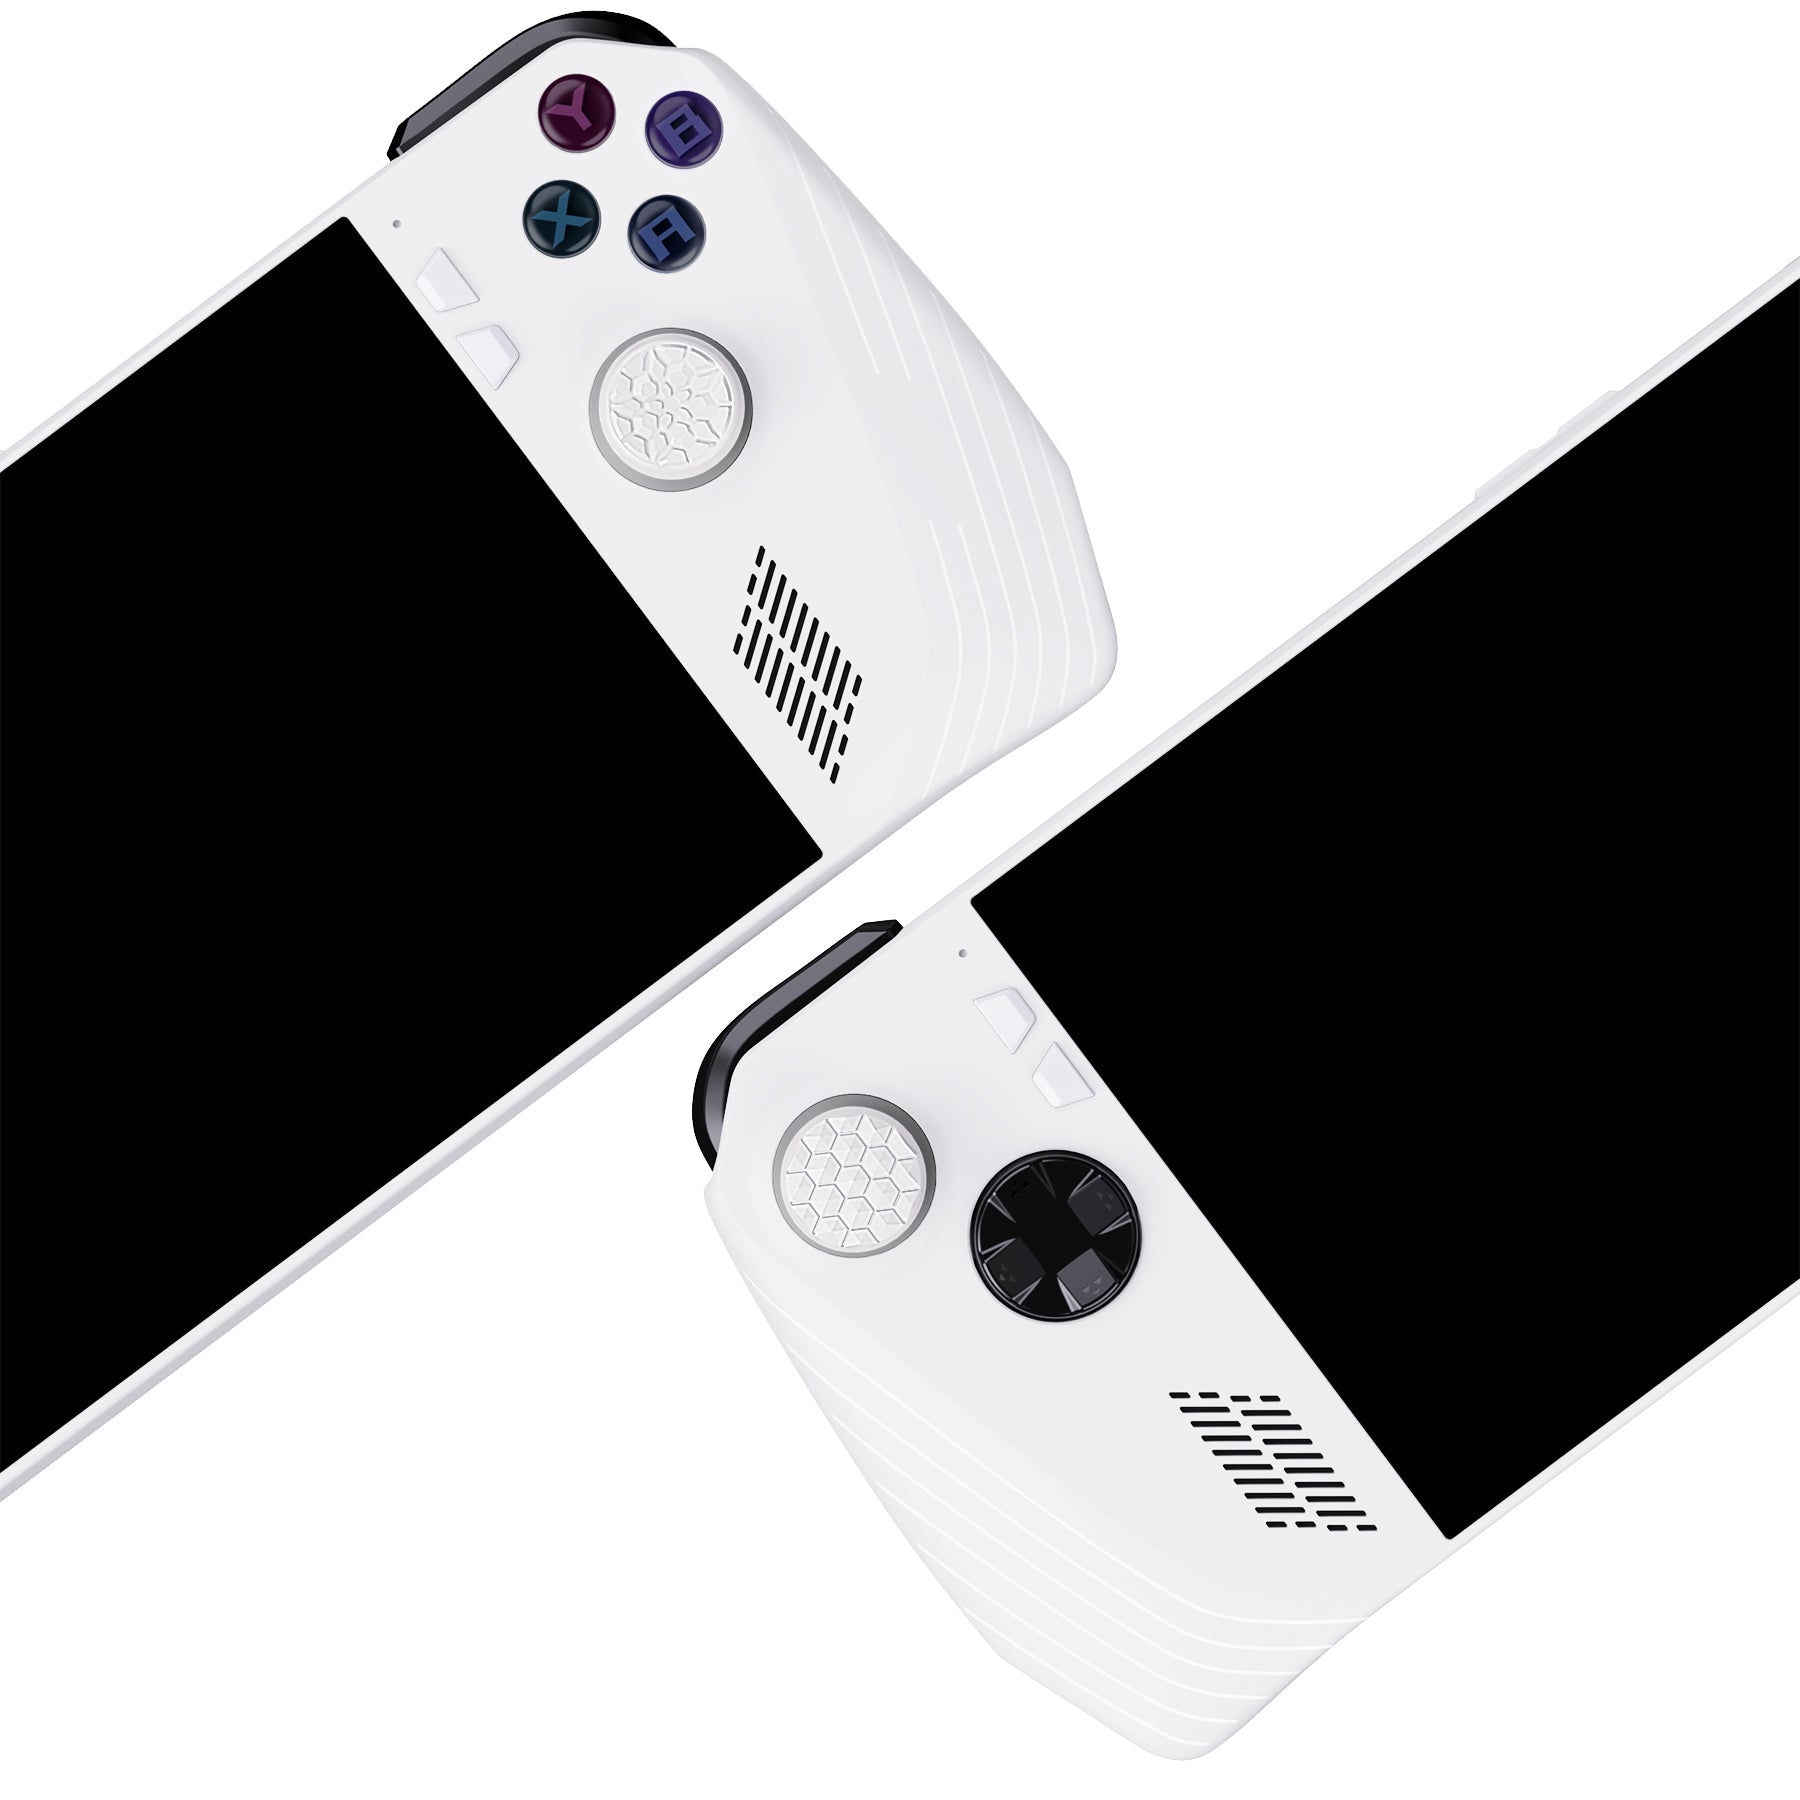 PlayVital White Thumbsticks Grips Caps for ROG Ally, Silicone Thumb Grips Joystick Caps for ROG Ally - Diamond Grain & Crack Bomb Design - TAURGM006 PlayVital